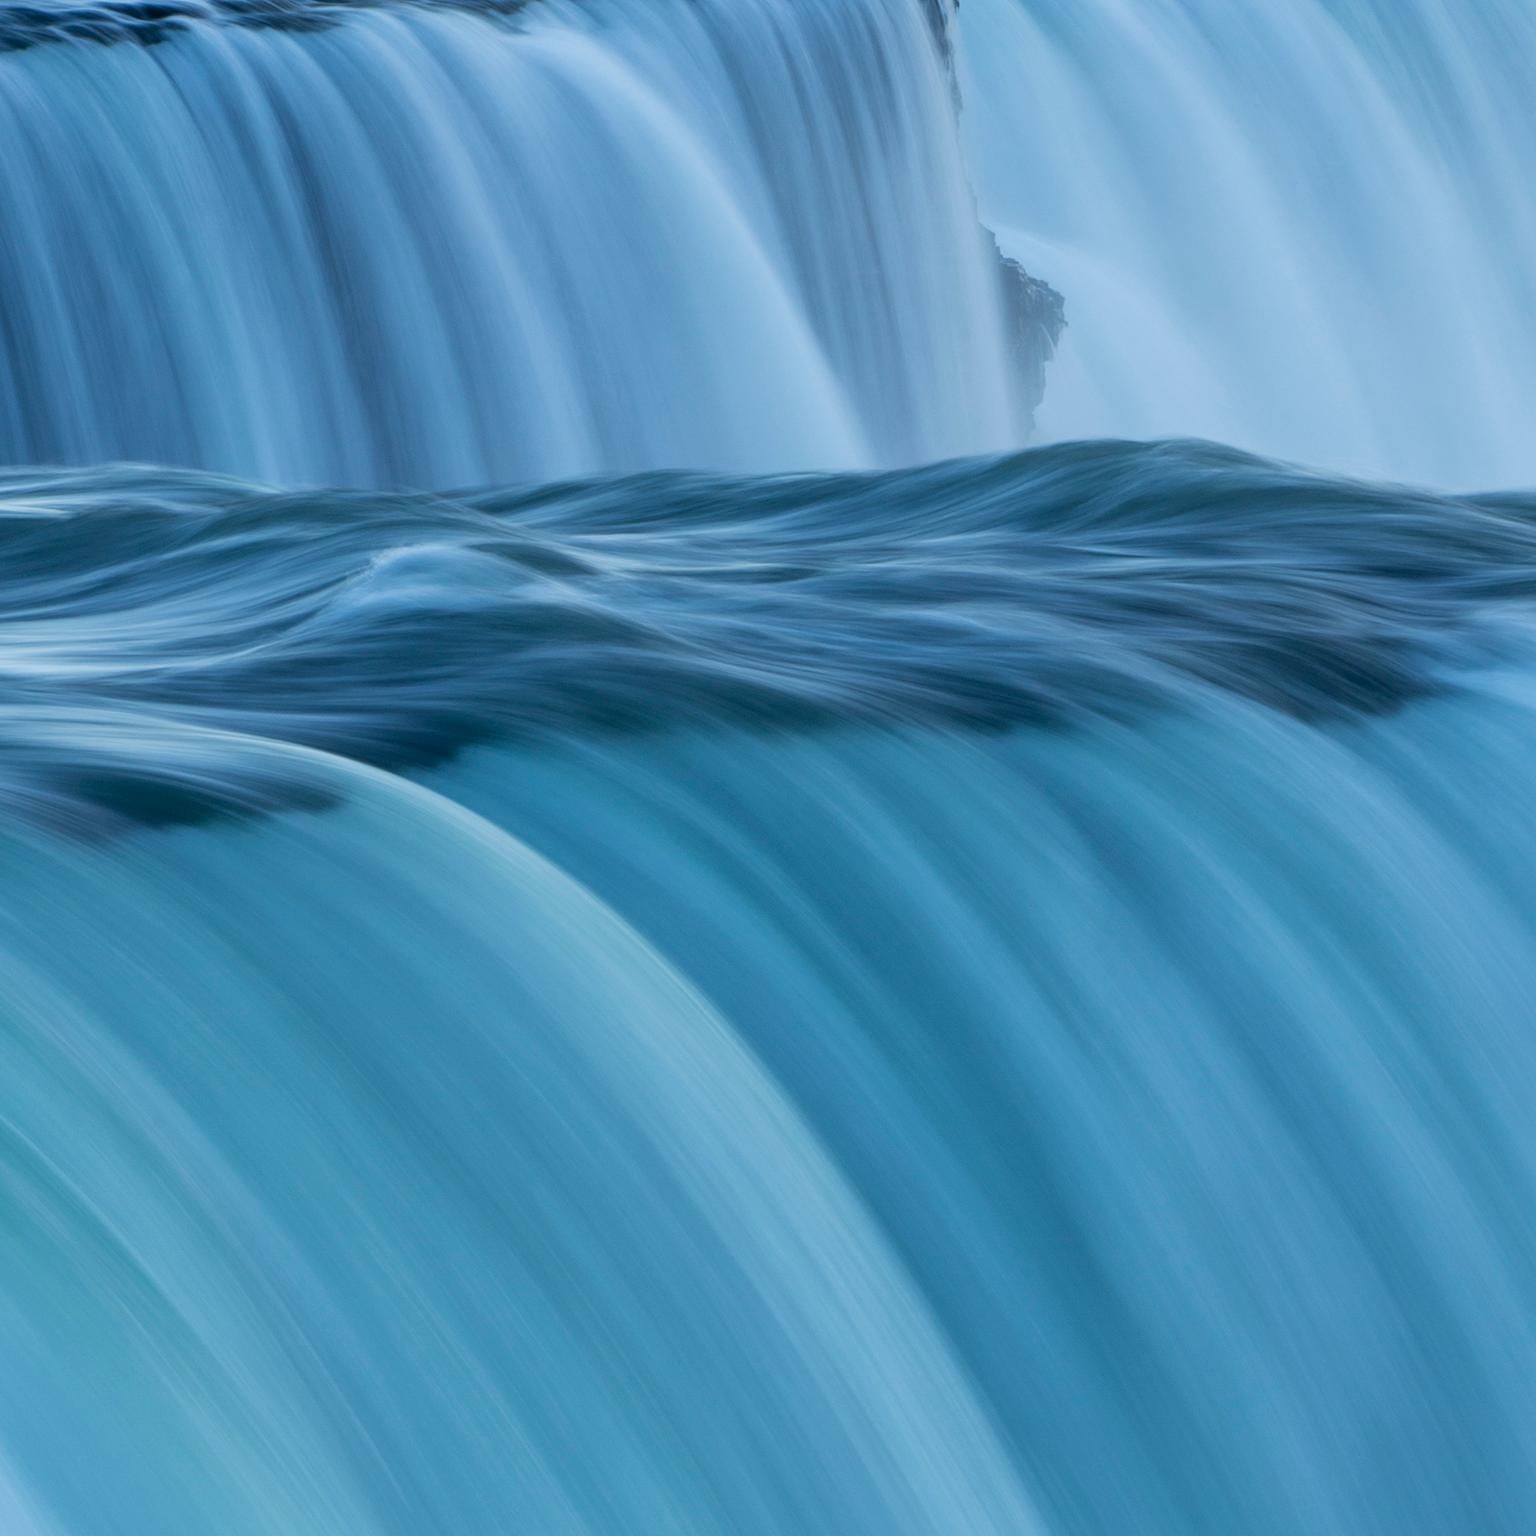 The American Falls, Niagara Falls, New York, USA. - Photograph by Cosmo Condina